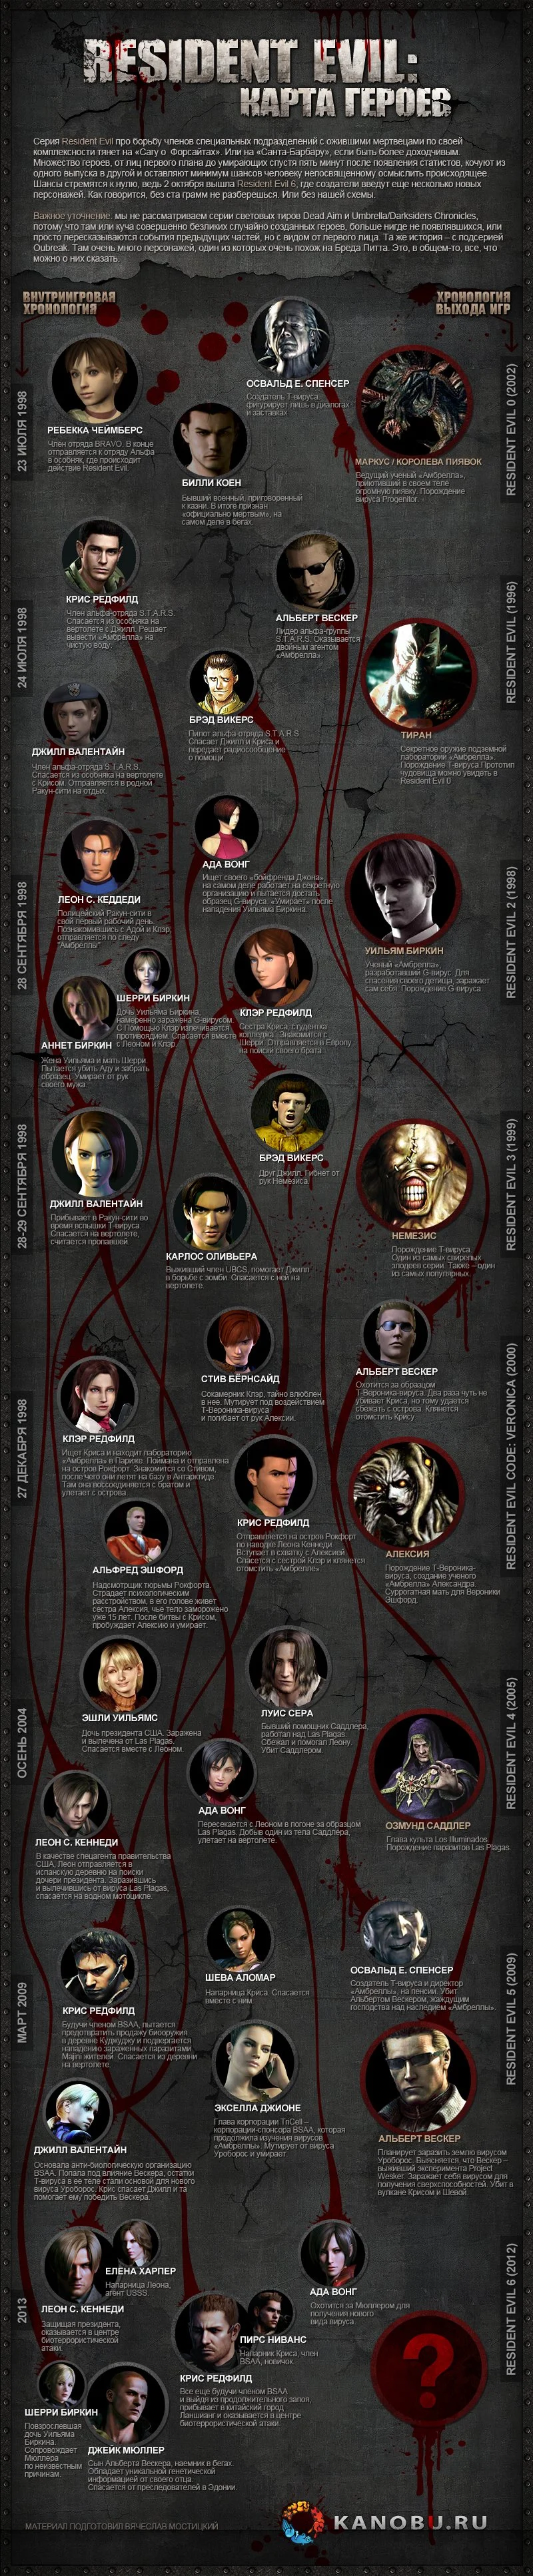 Лаборатория расходящихся тропок: карта героев Resident Evil - фото 1